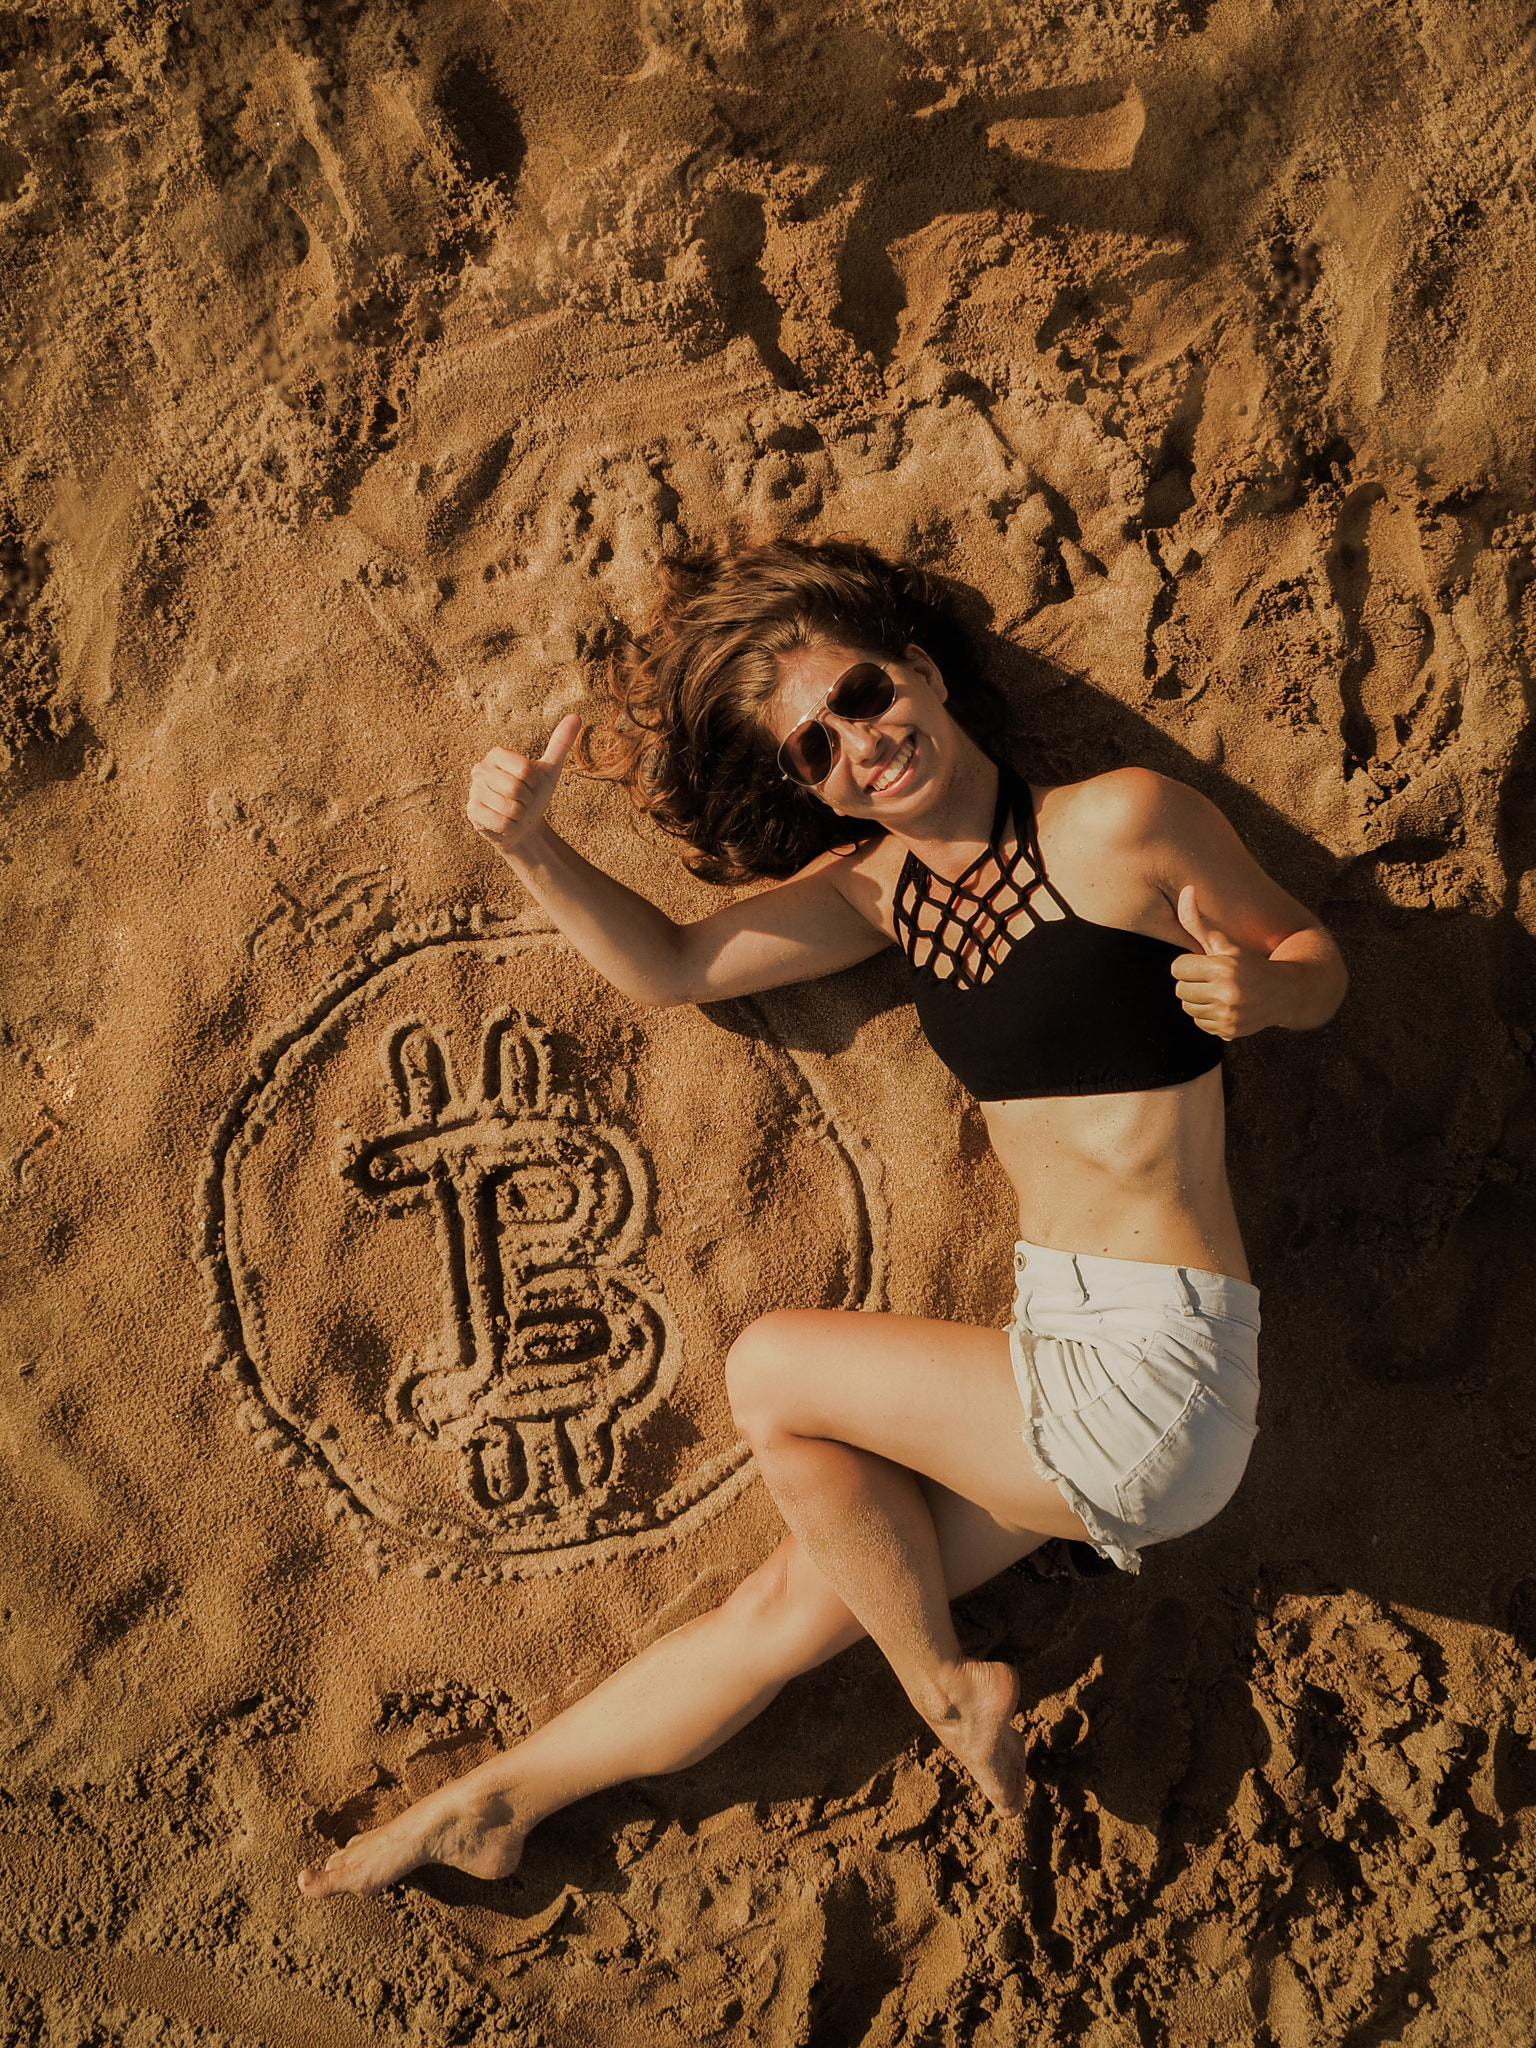 Bitcoin Girl on the beach